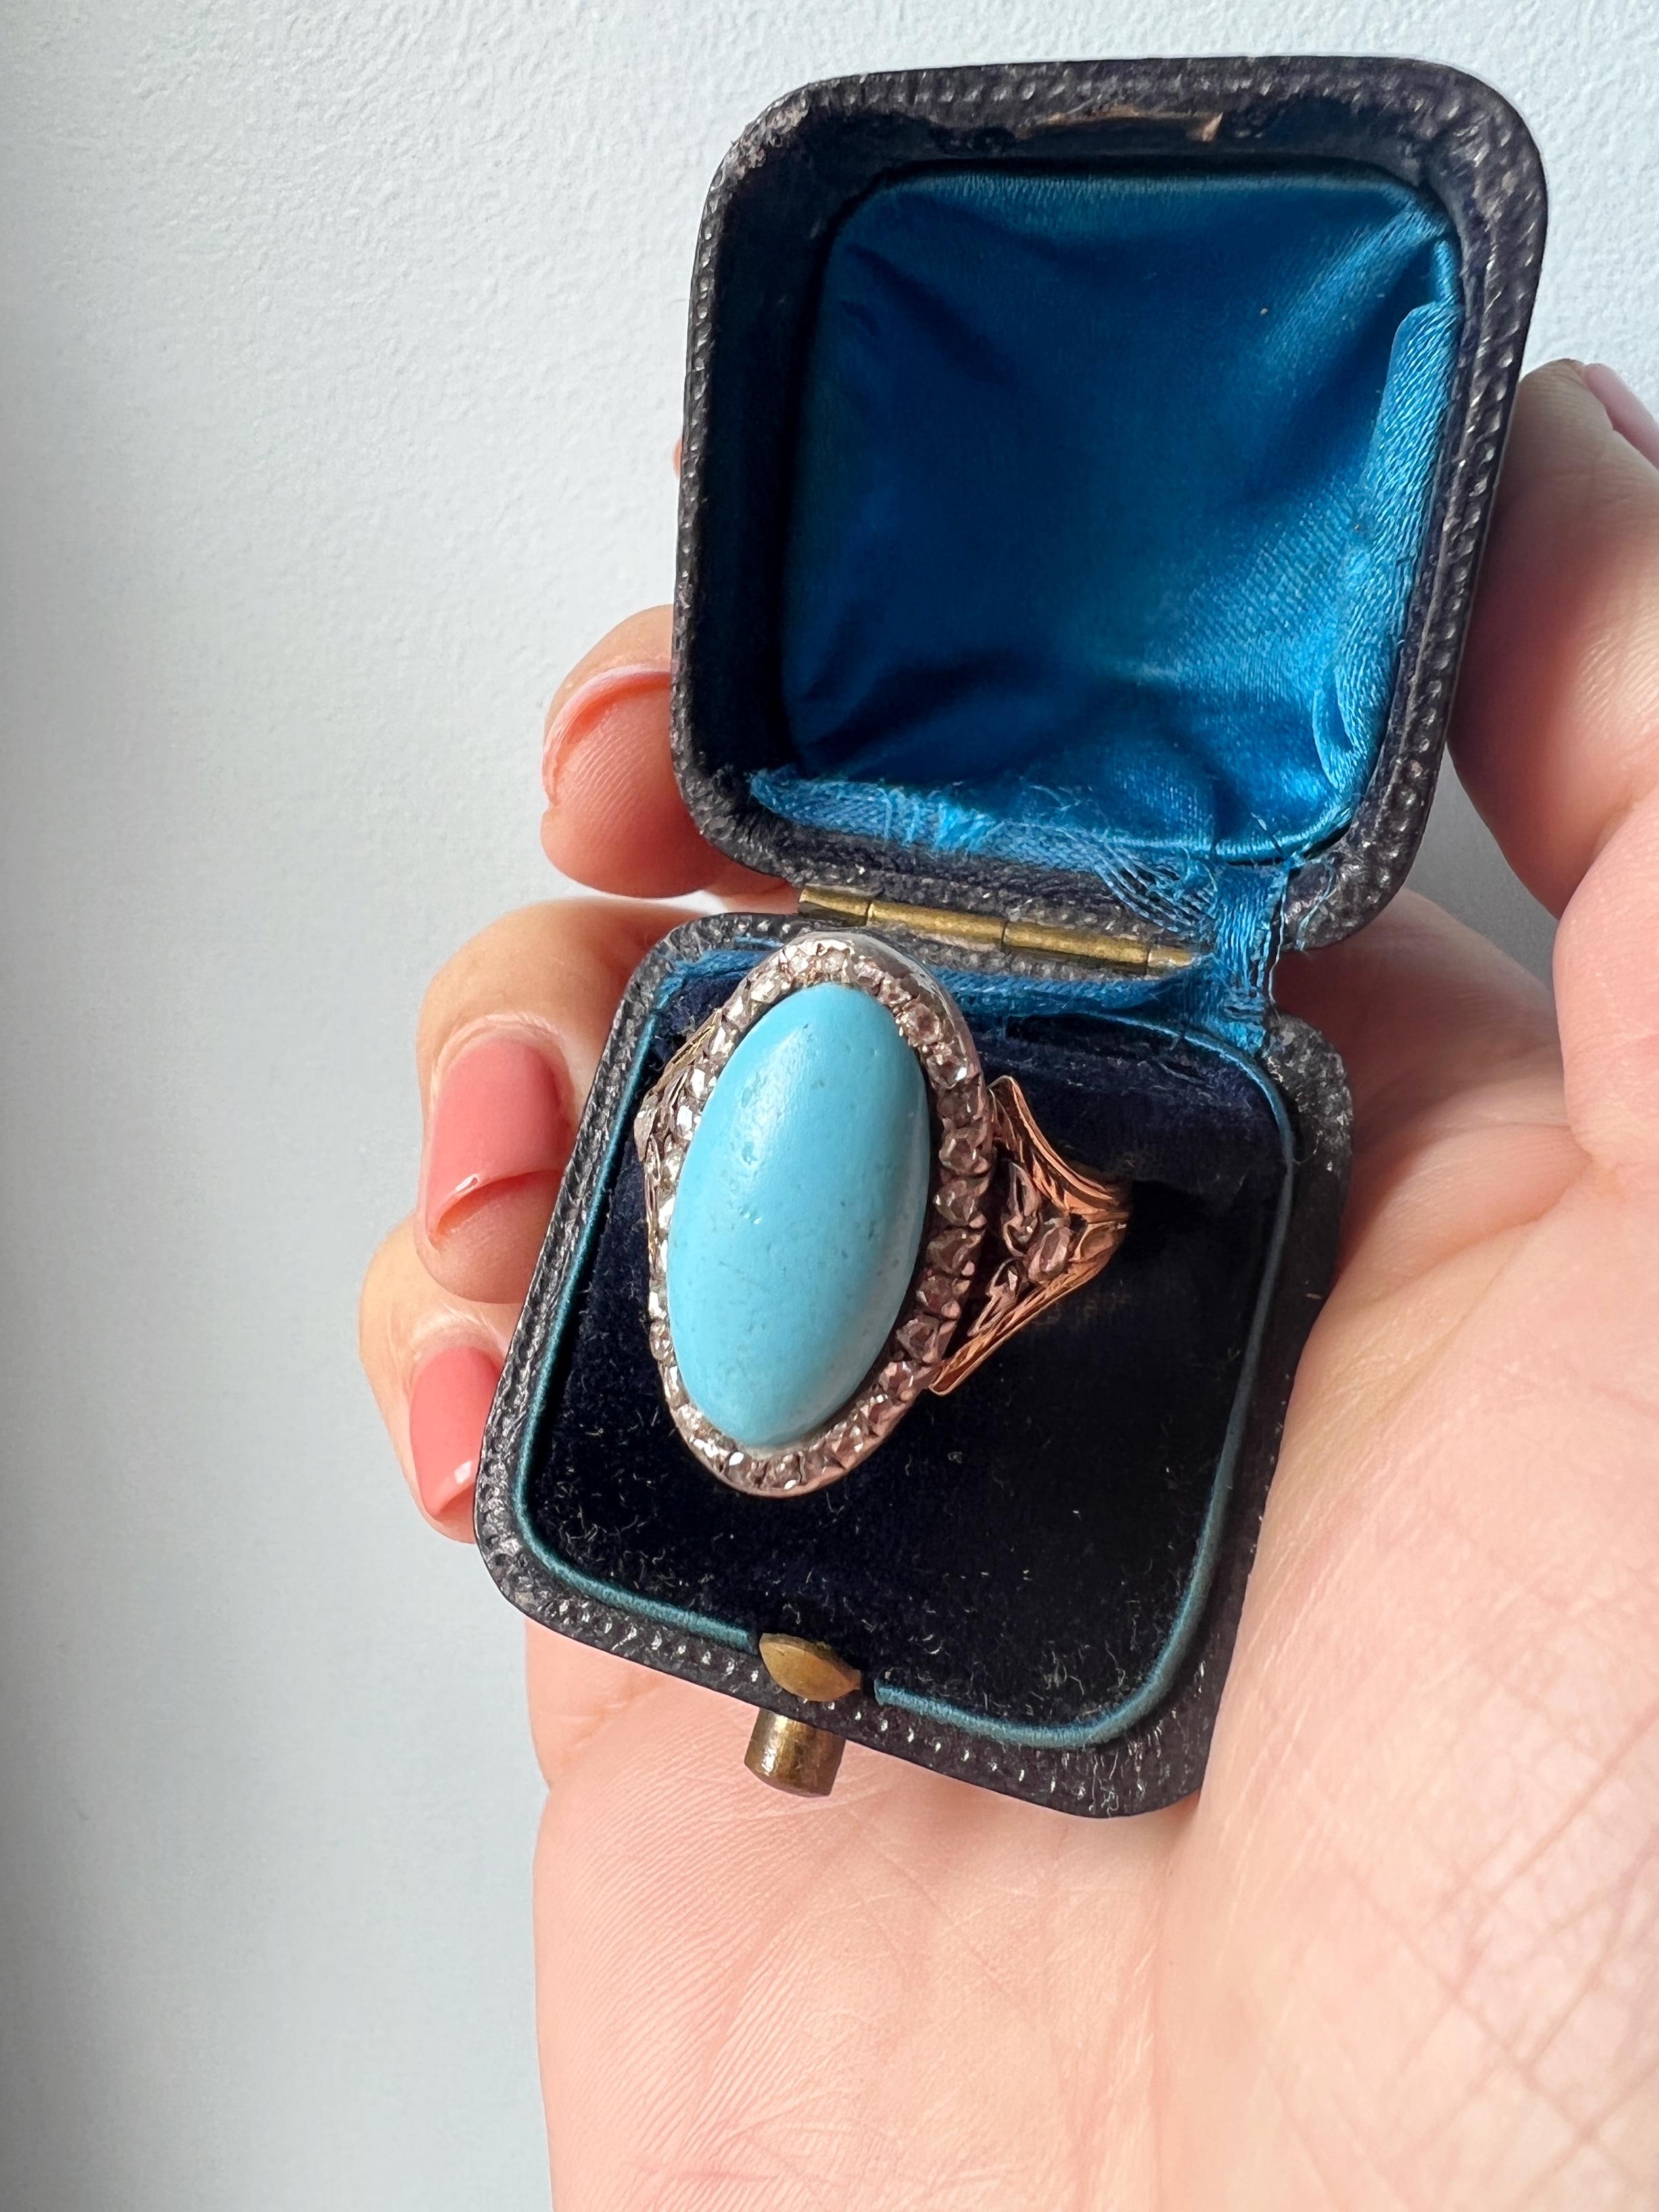 Zum Verkauf steht ein fabelhafter & sehr seltener 18k Statement-Ring mit einem wunderschönen blauen Pâte de Verre in der Mitte, umgeben von funkelnden Diamanten im Rosenschliff. Die erhabene himmelblaue Farbe ist in diesem fabelhaften Ring perfekt